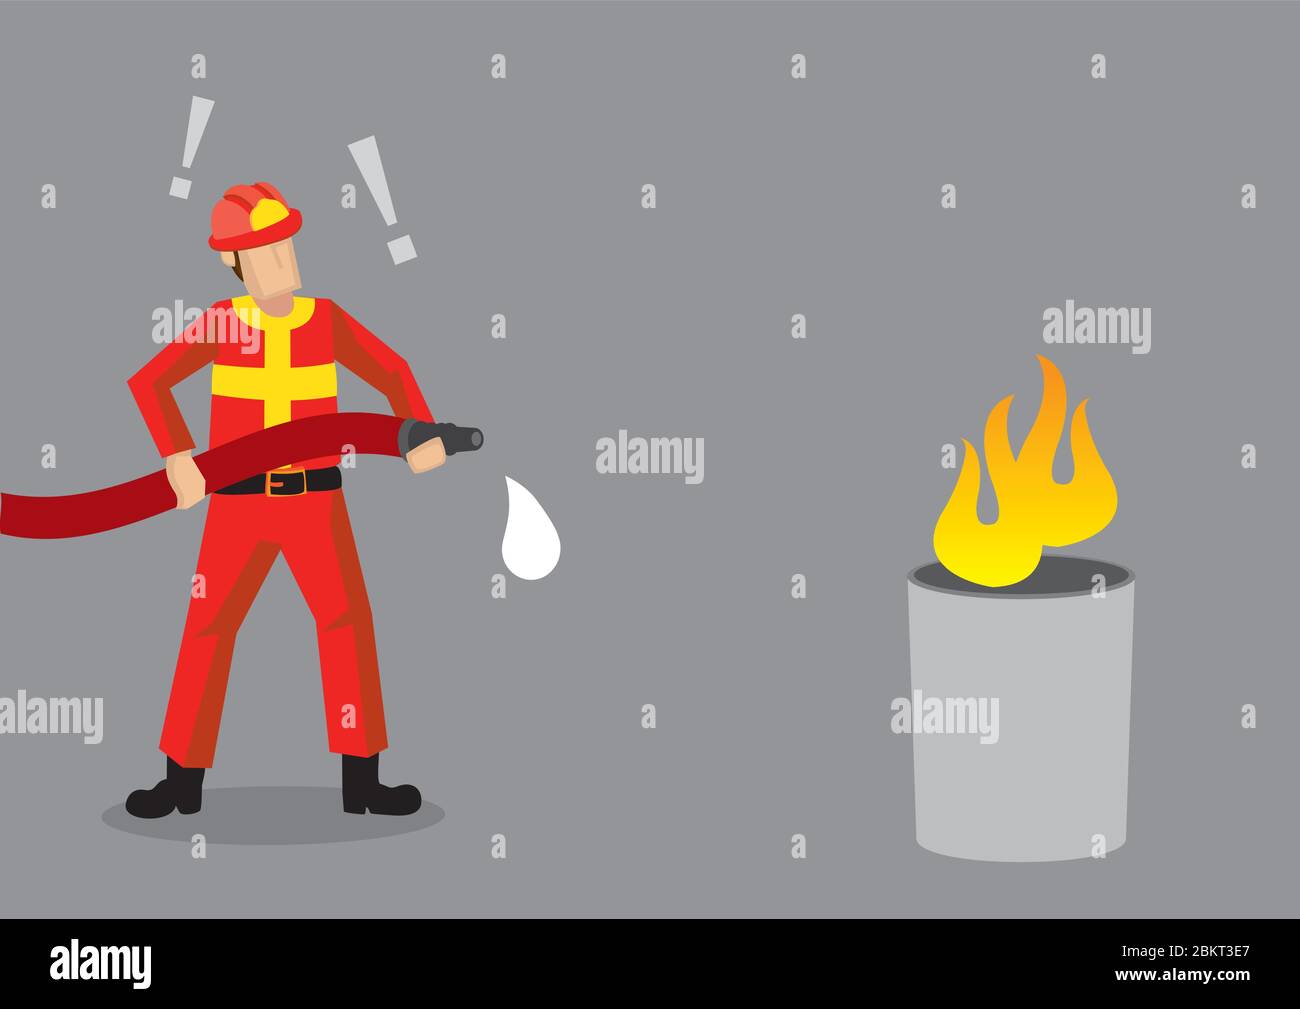 Un pompier de dessin animé debout devant un faux feu, choqué que son tuyau n'ait pas d'eau. Illustration vectorielle créative sur une situation d'échec comique épique Illustration de Vecteur